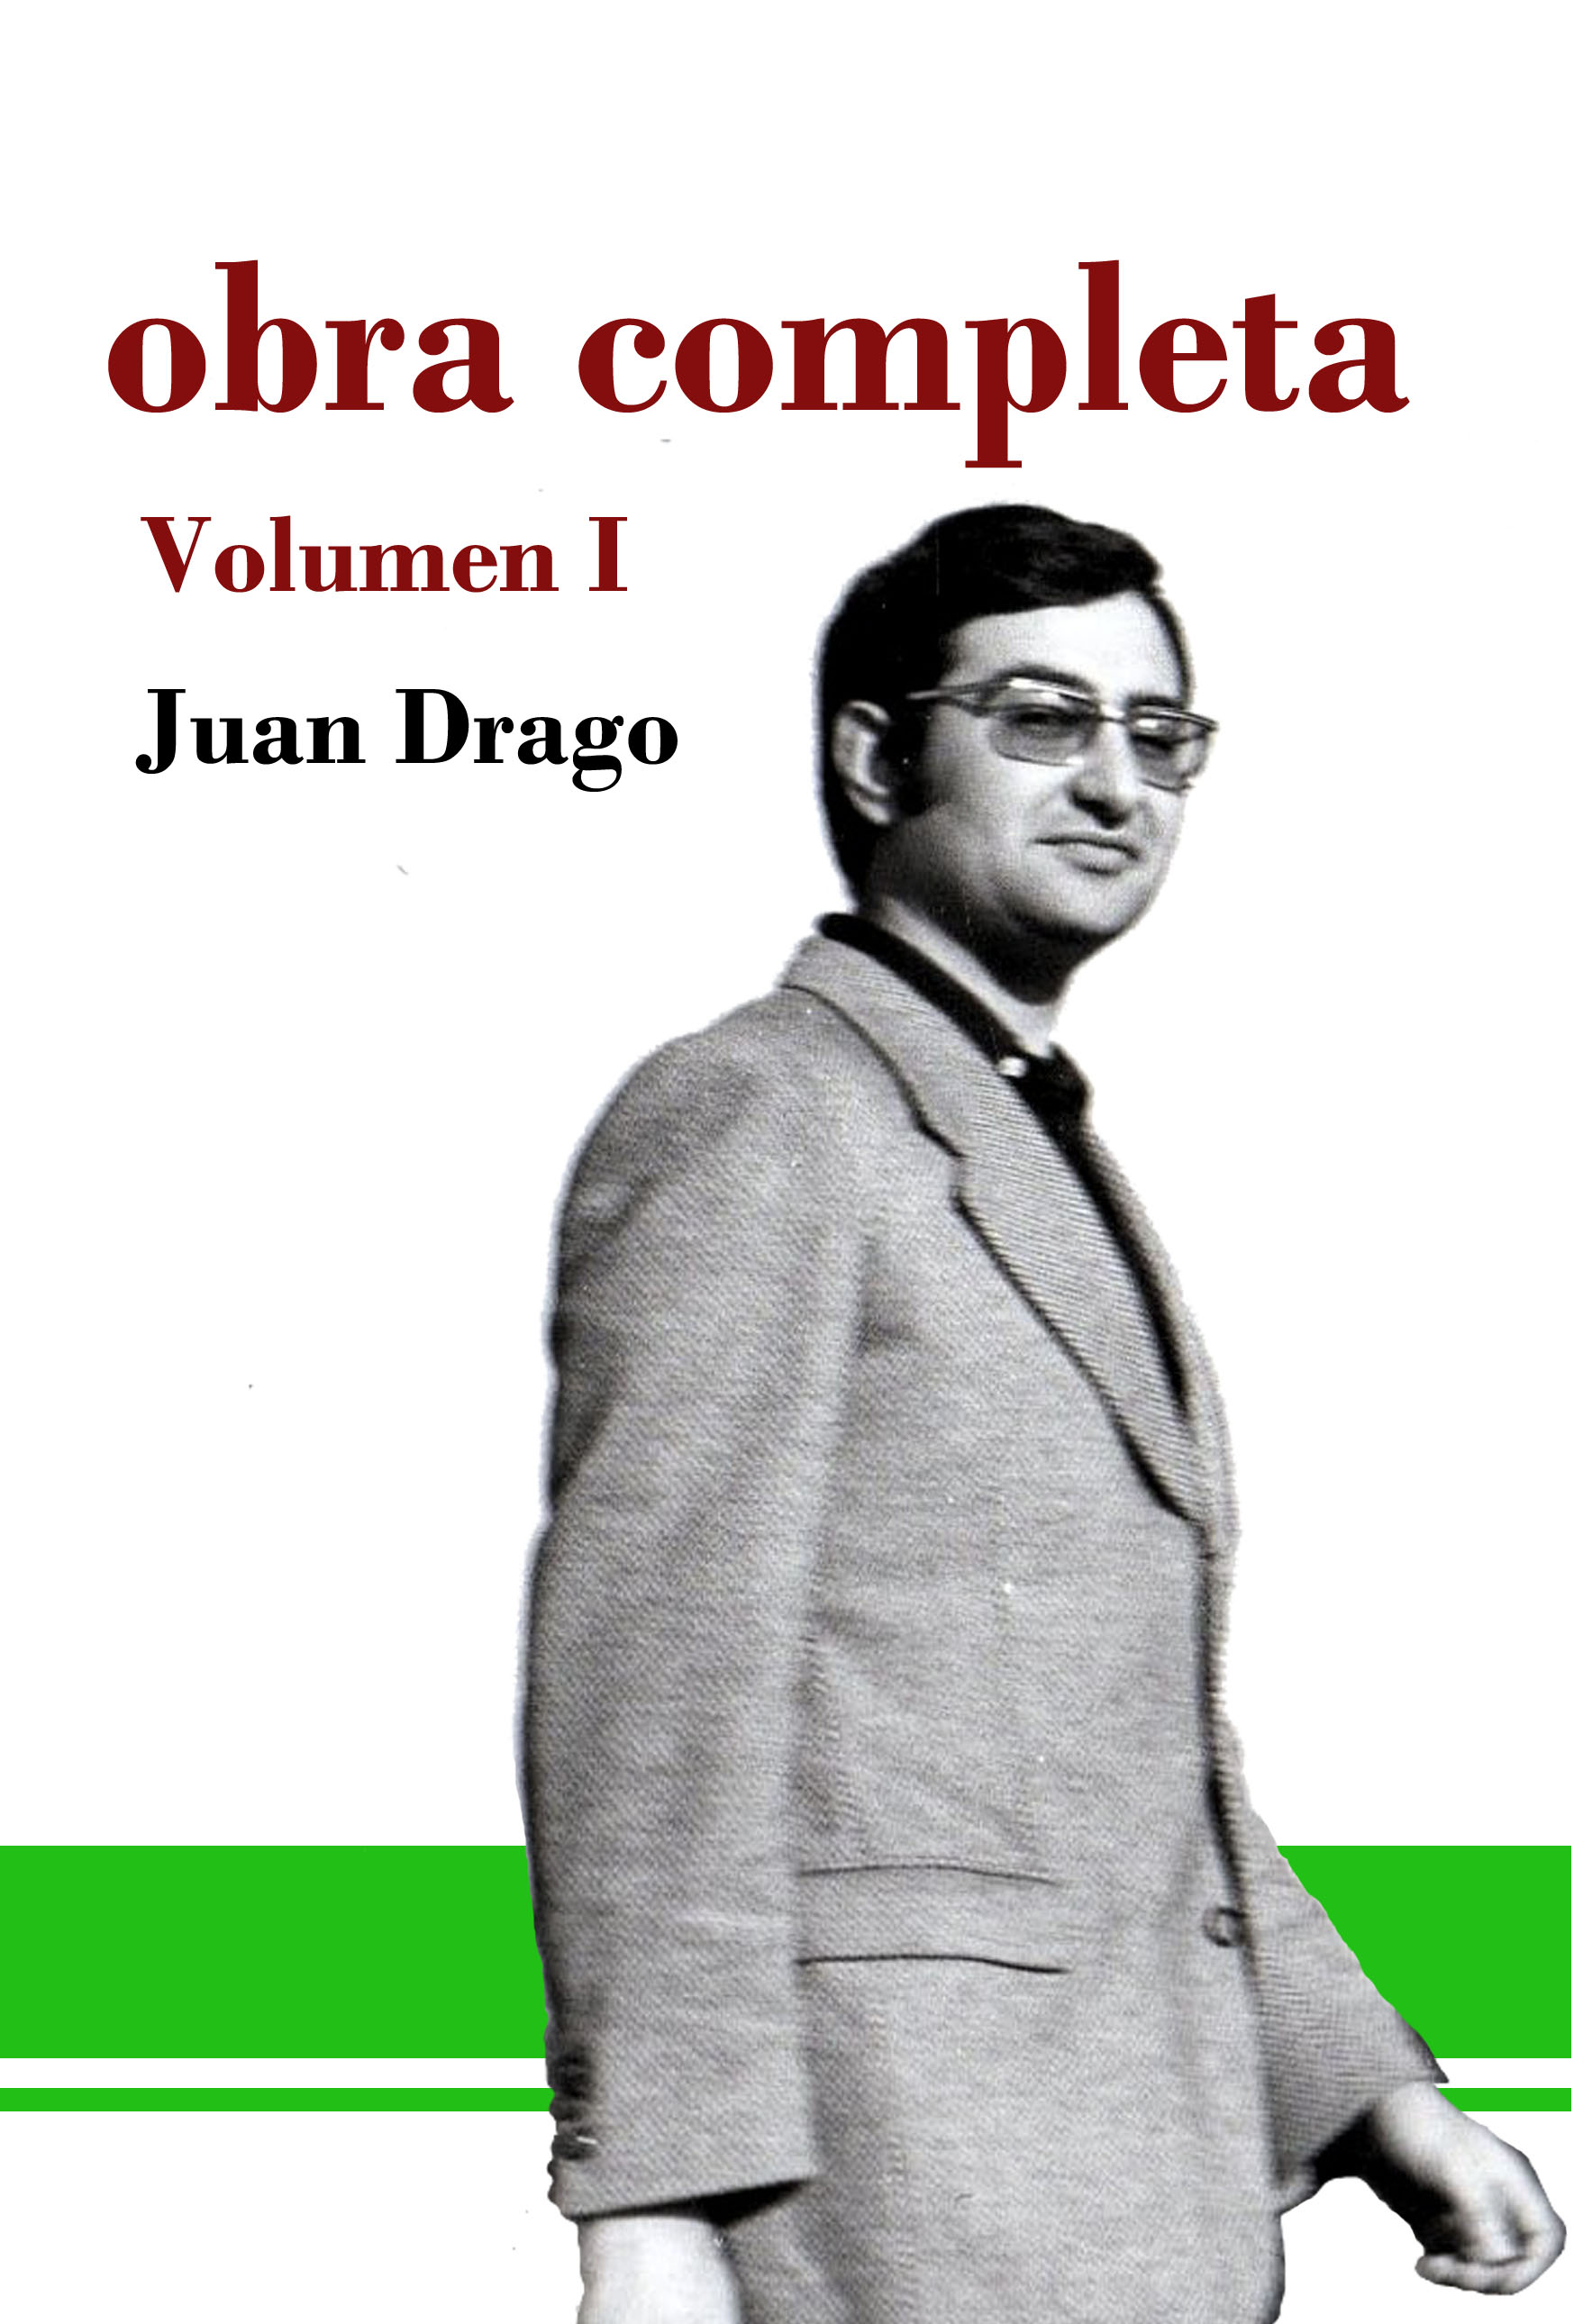 Imagen de portada del libro Obra completa / Juan Drago